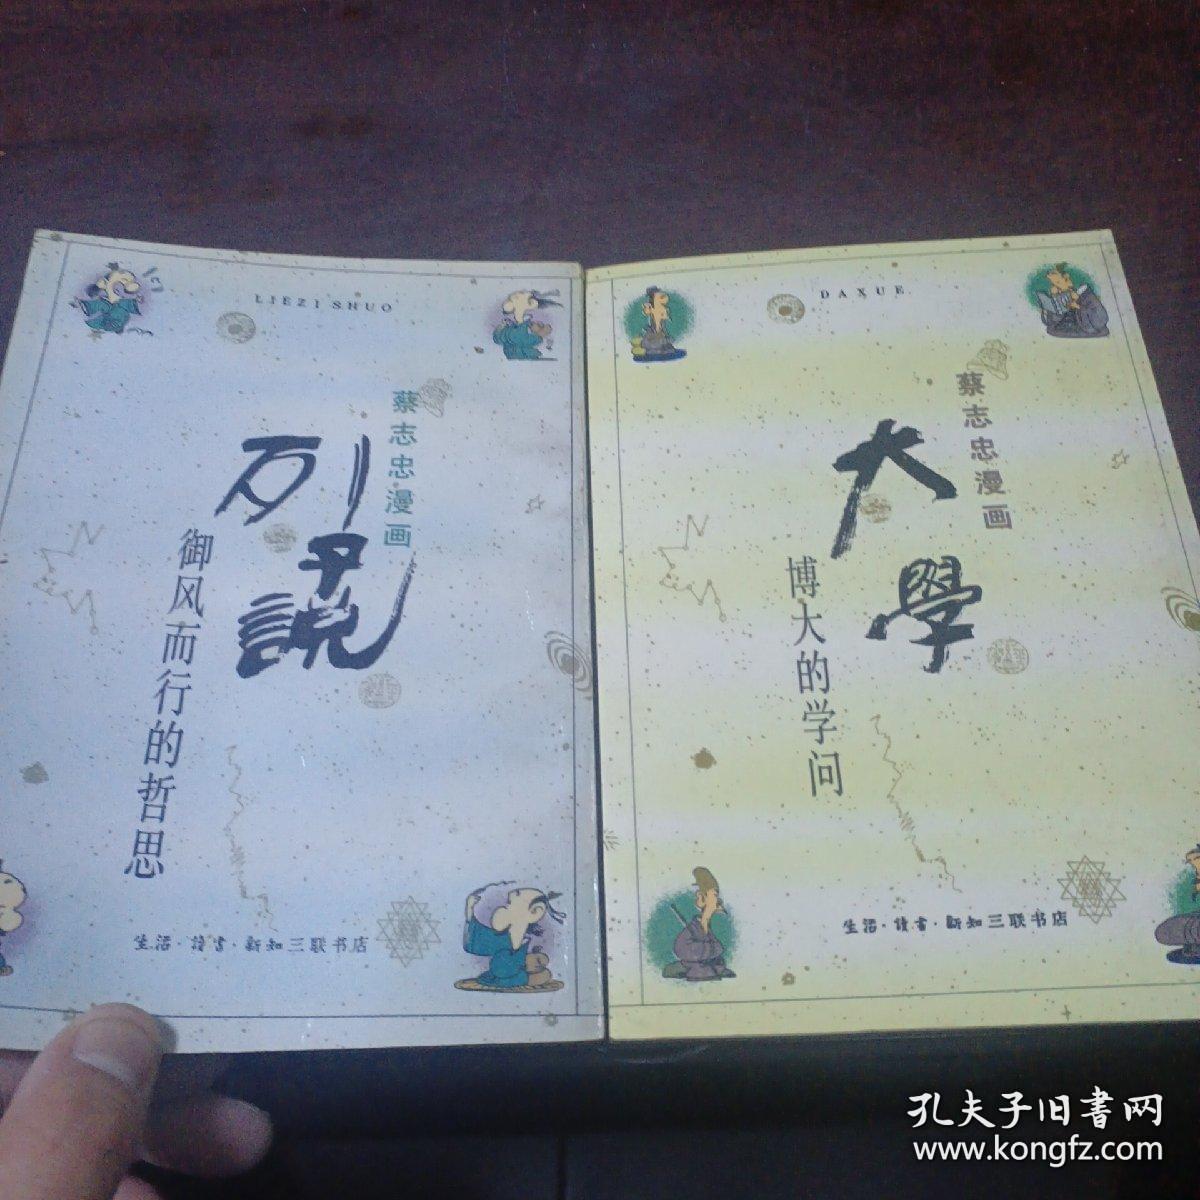 蔡志忠漫画两册合售